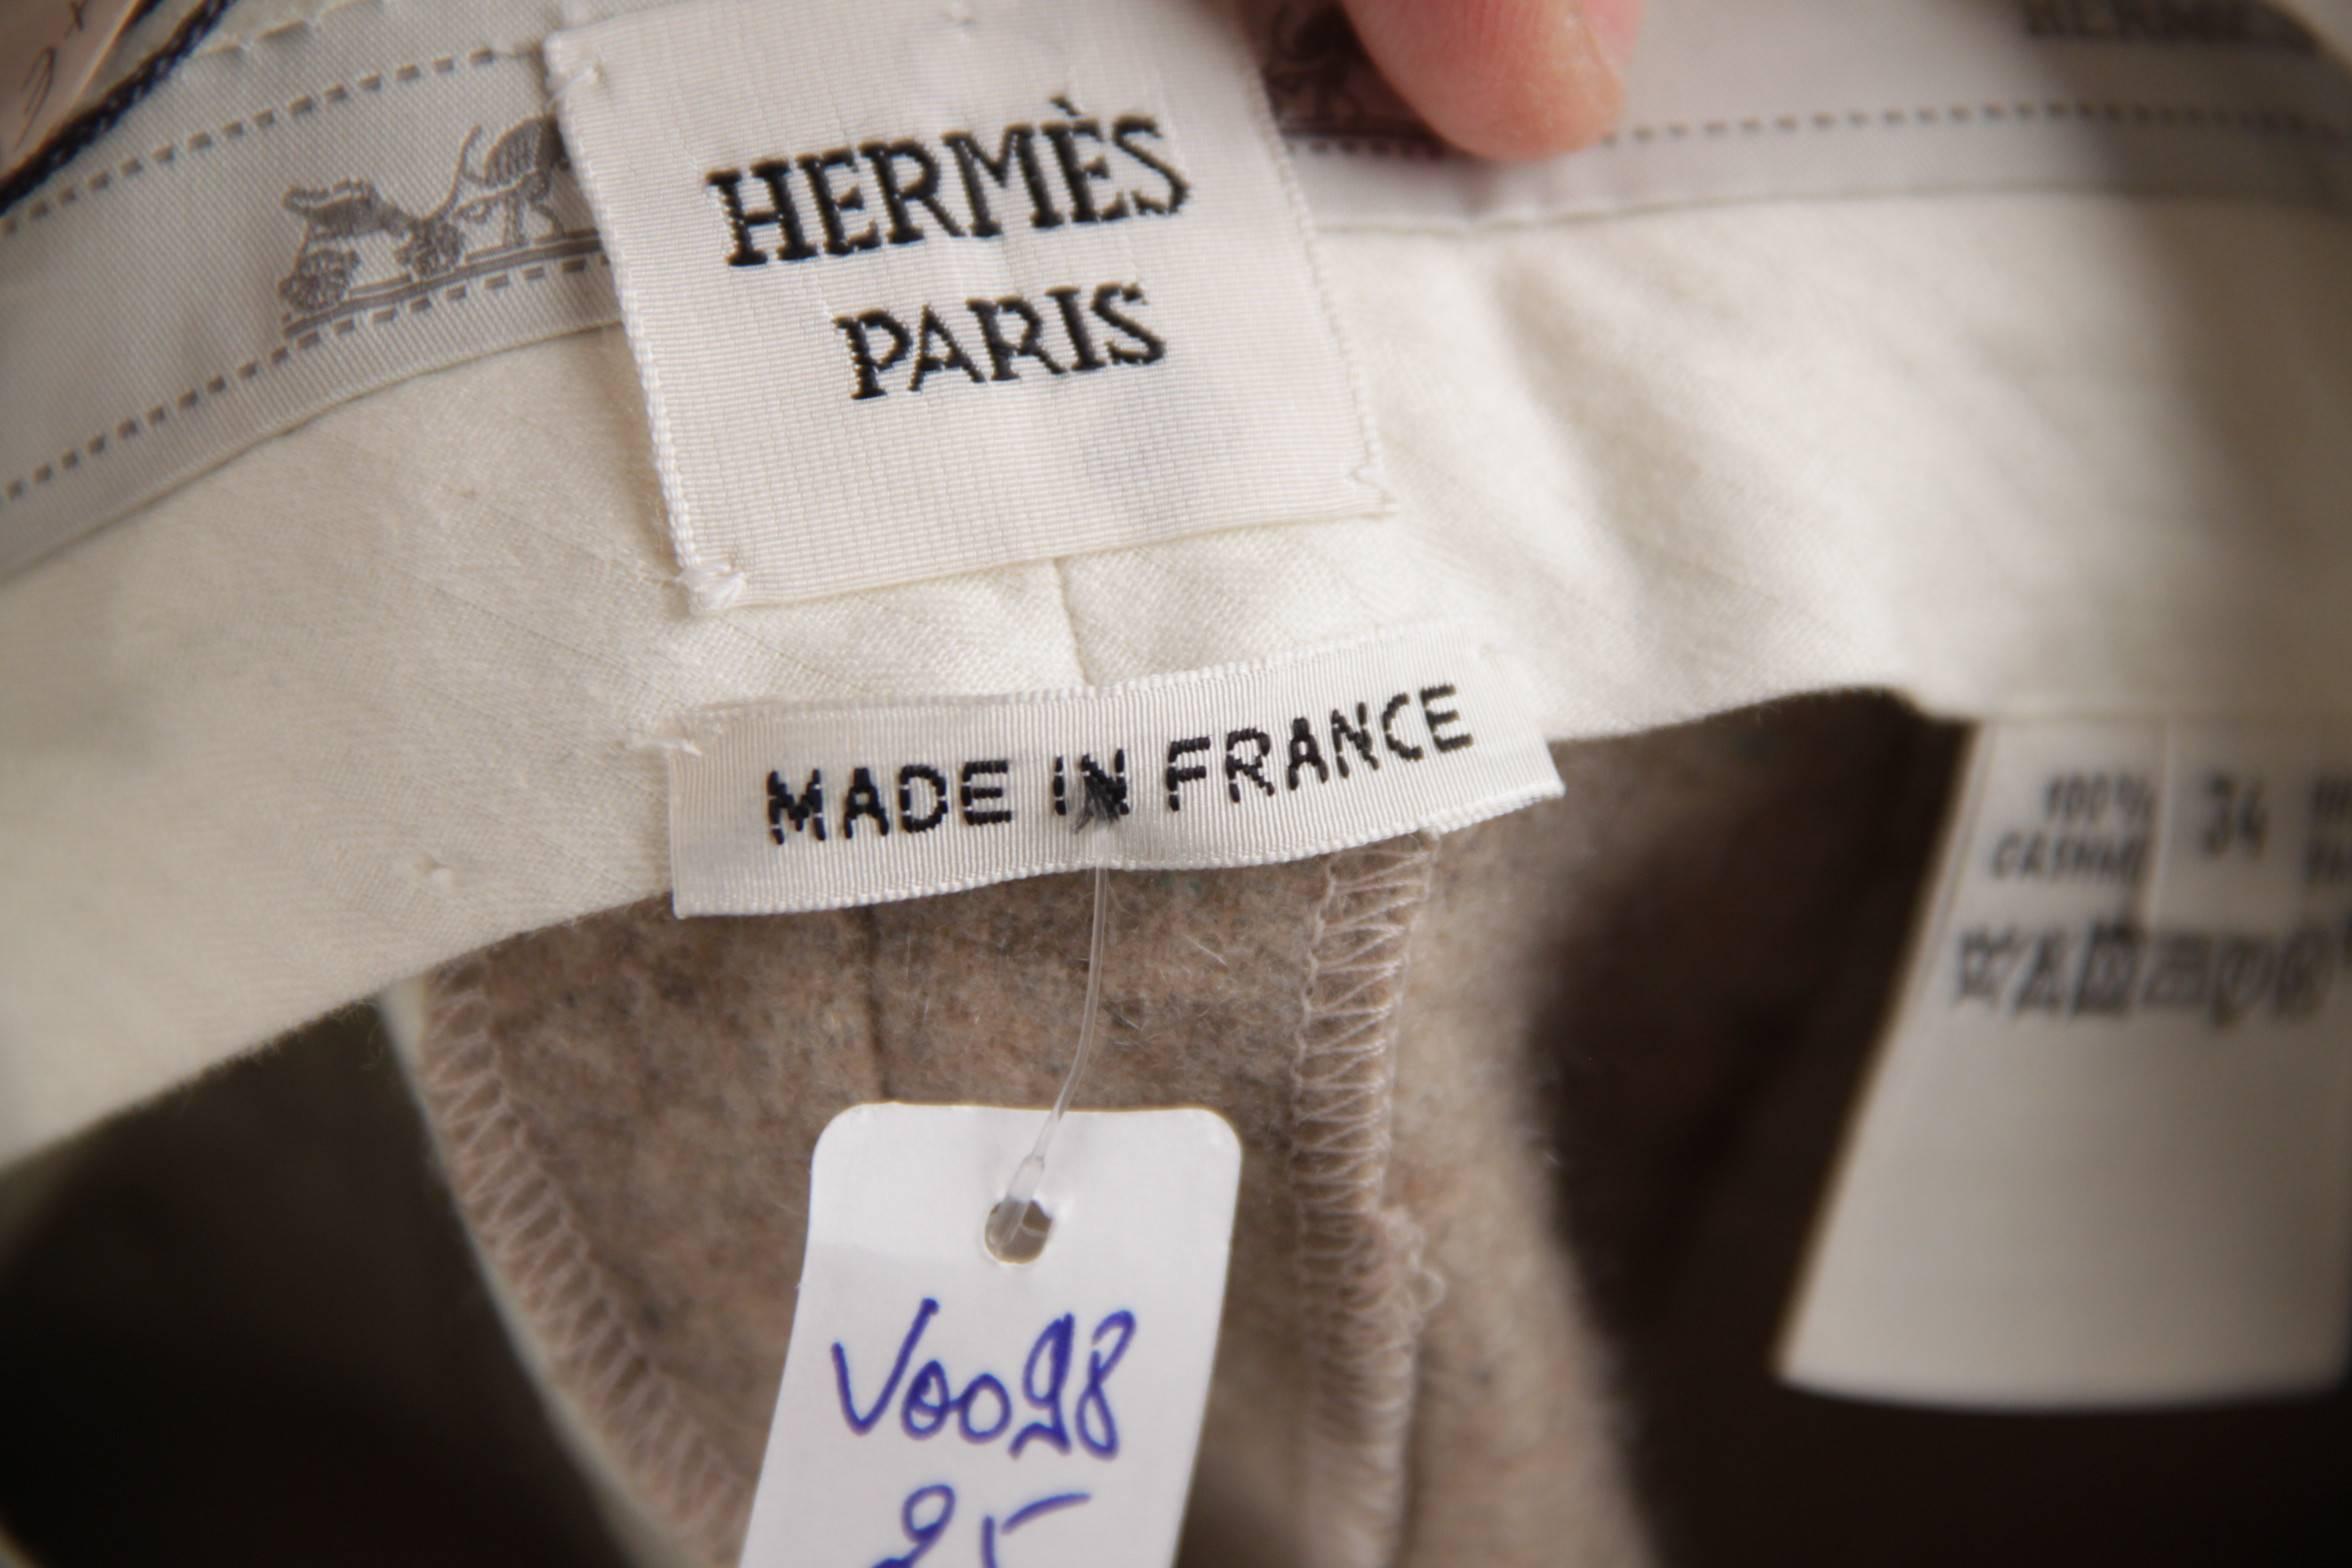 HERMES PARIS Vintage Beige Cashmere TAILORED TROUSERS Pants Size 34 XS 3